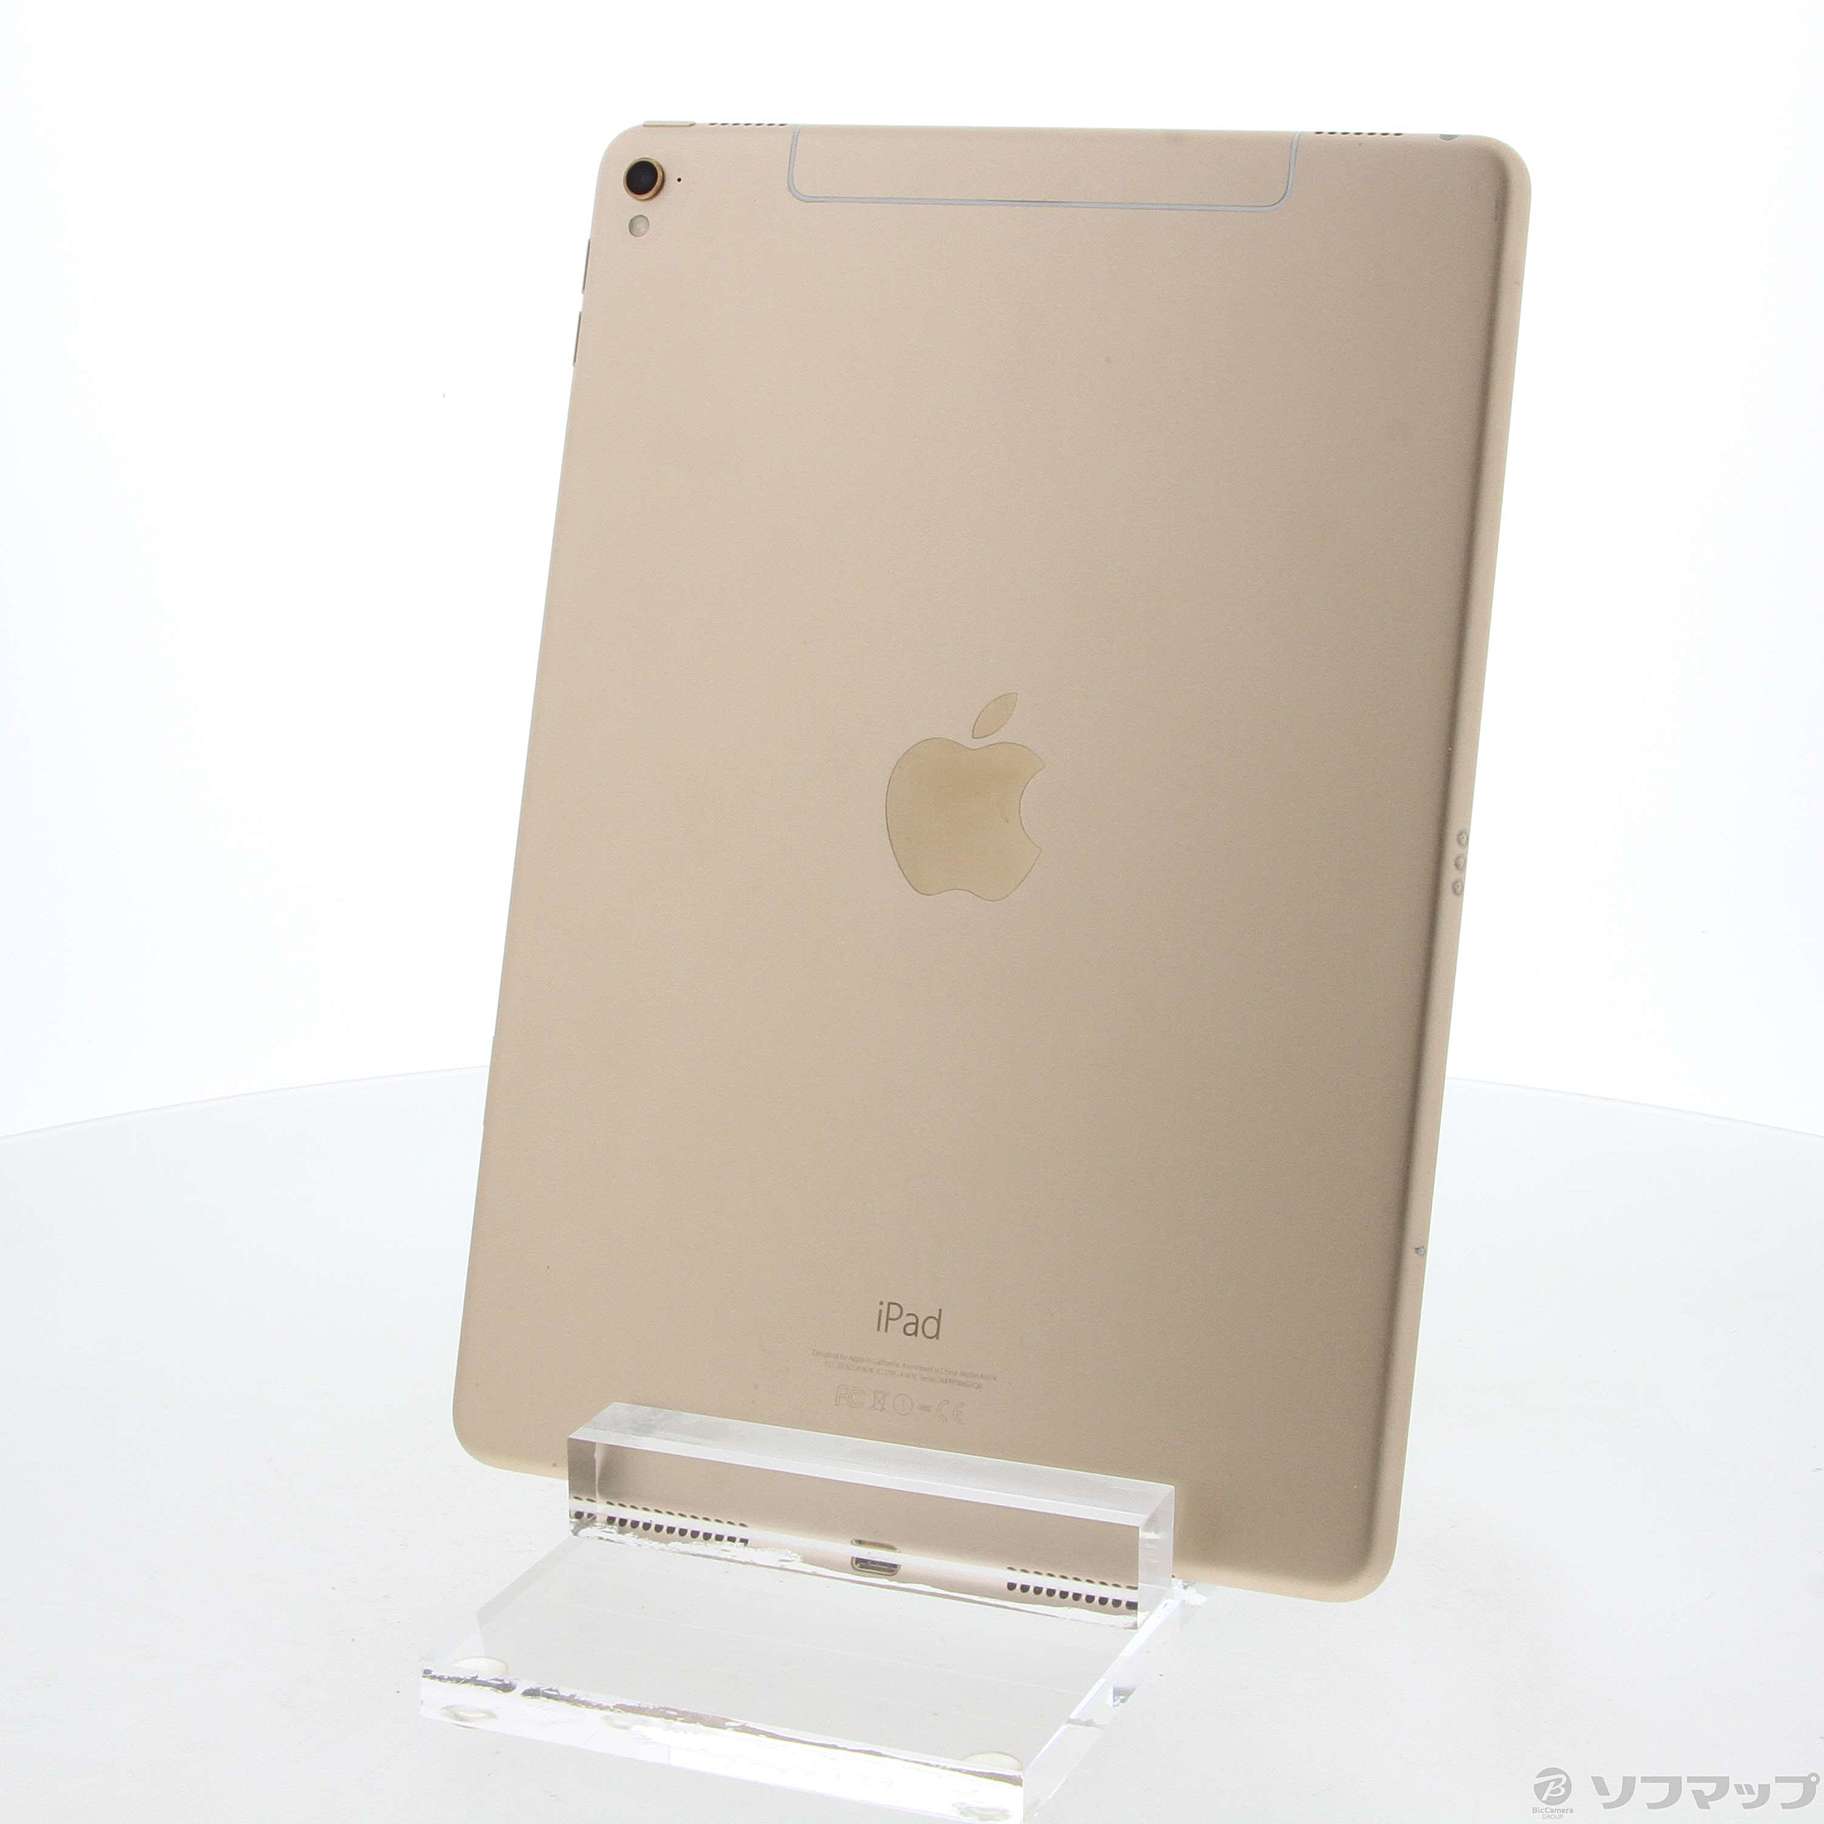 カーキ×インディゴ iPad Pro 9.7型 128GB MLQ52J/A | www.tegdarco.com